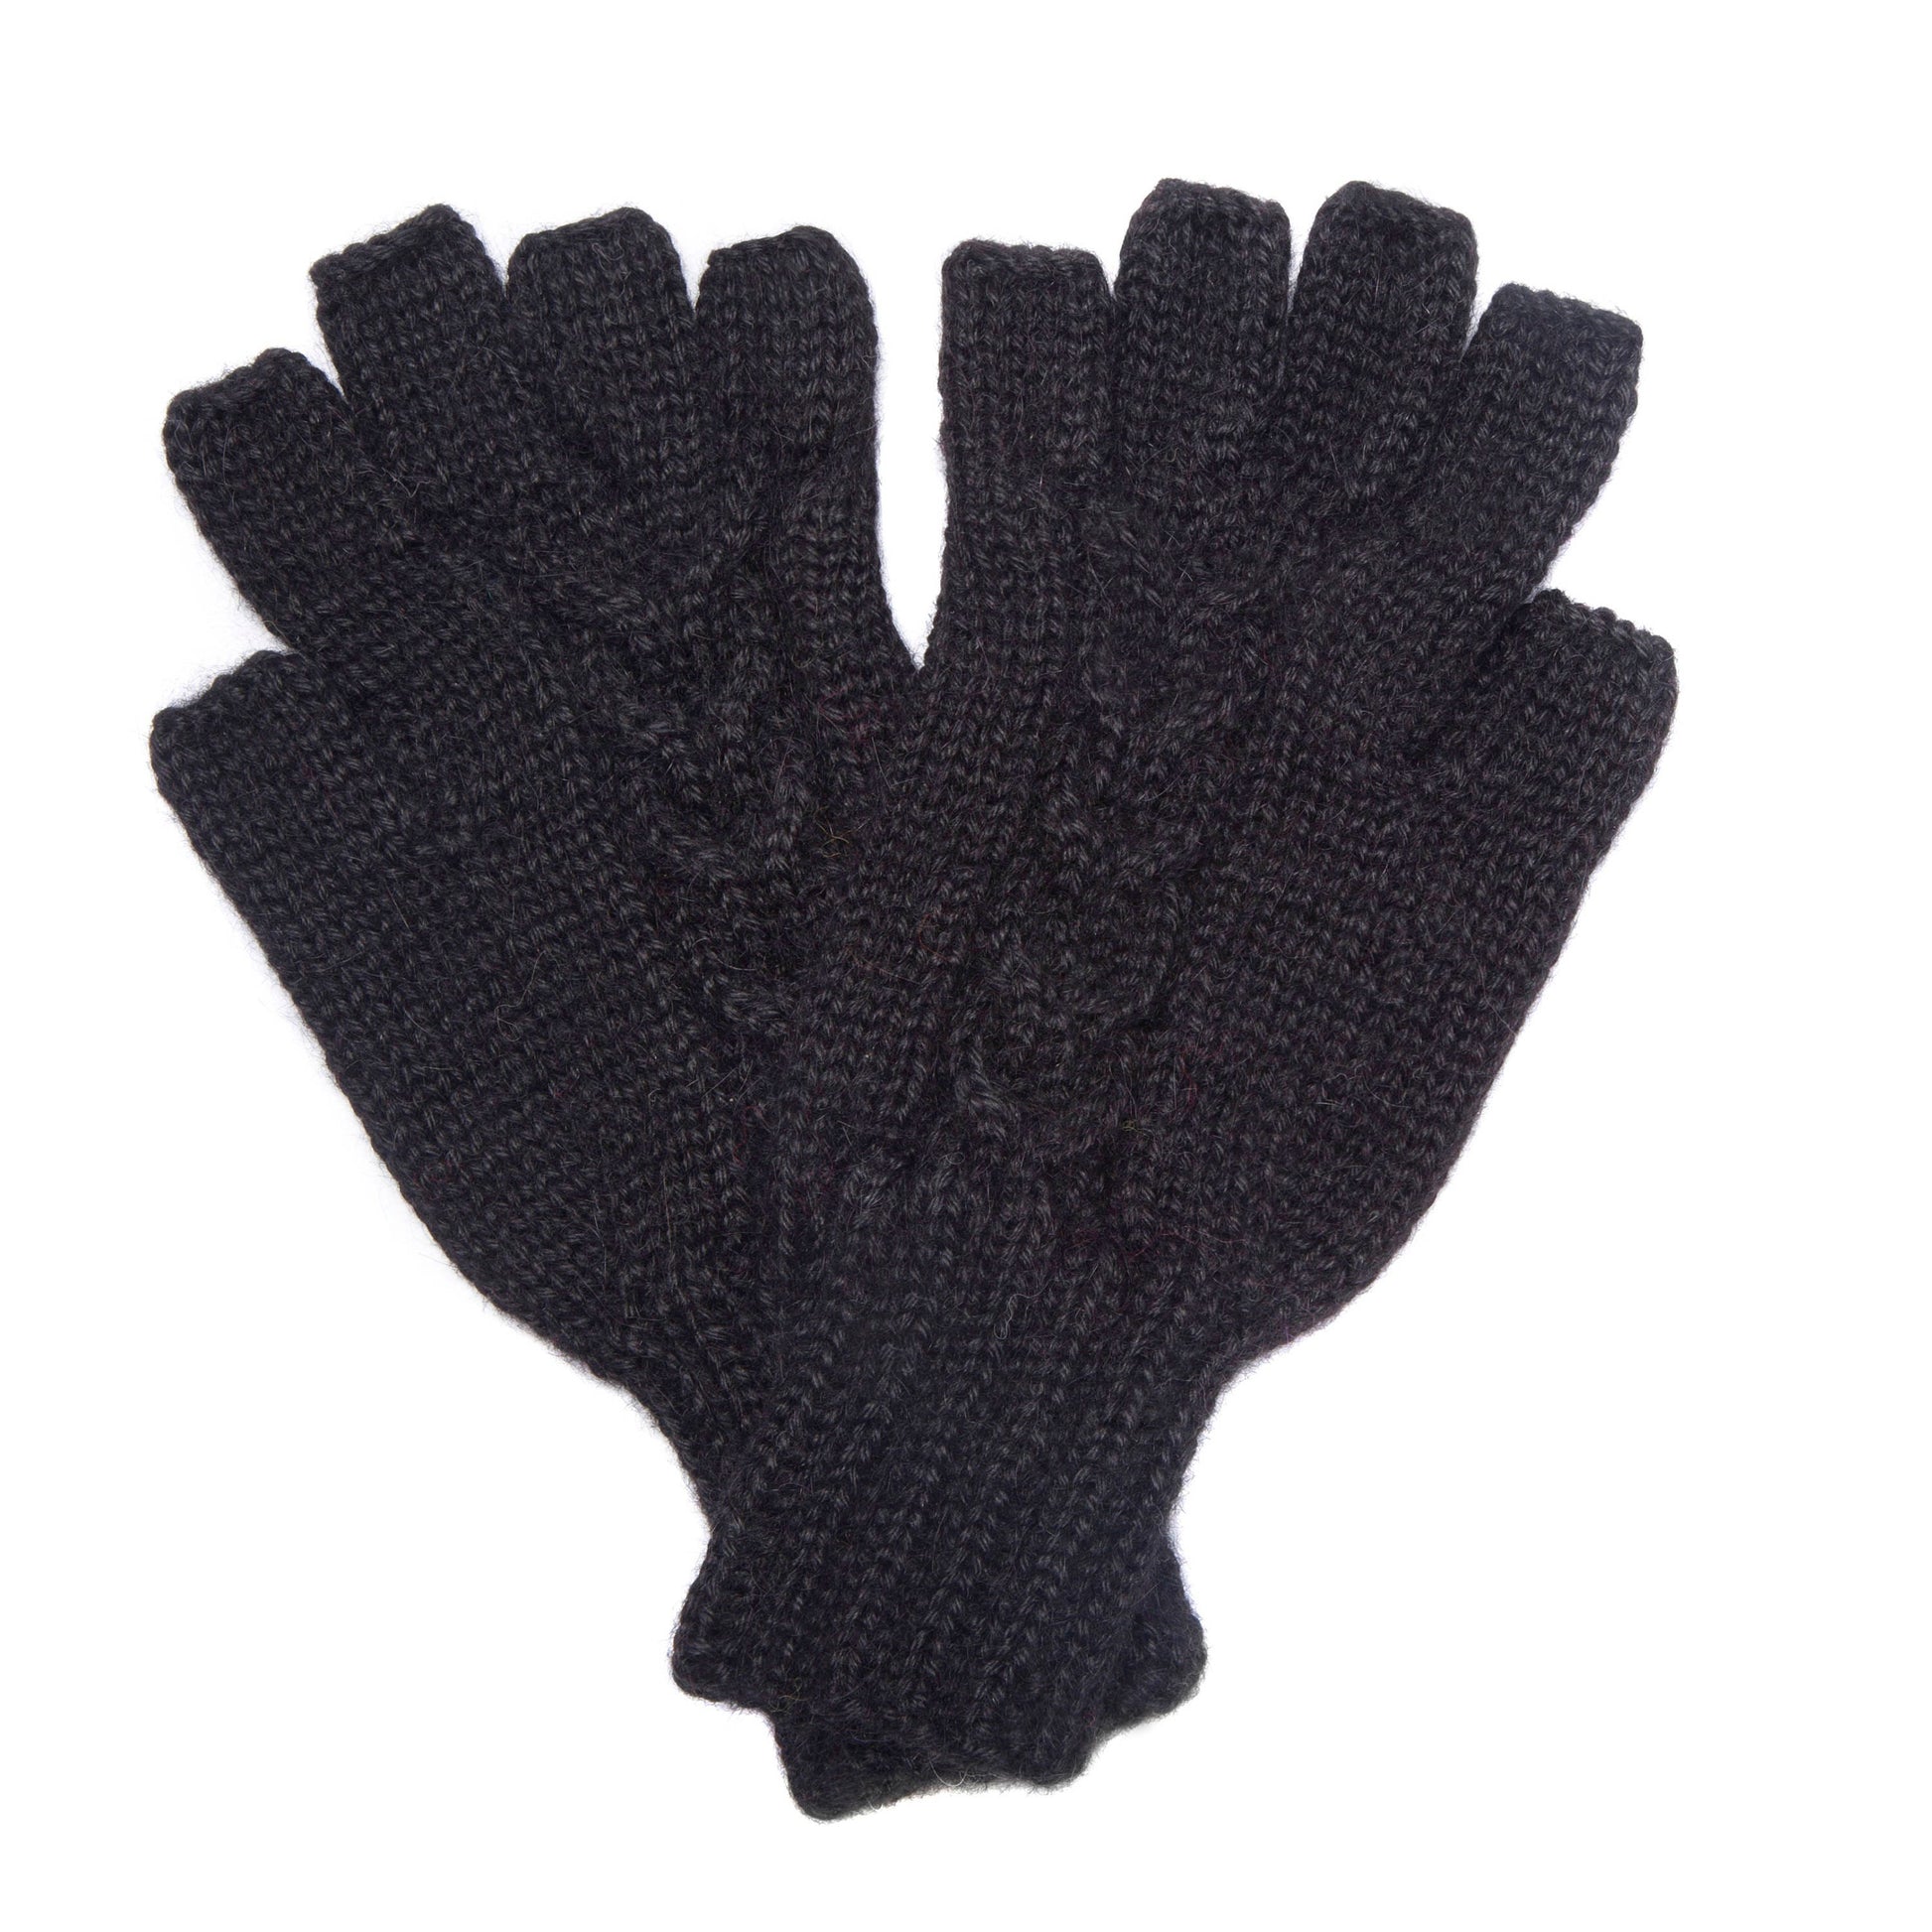 100% Alpaca Hand Knit Half Finger Gloves, Fingerless Cut Off Mittens Green